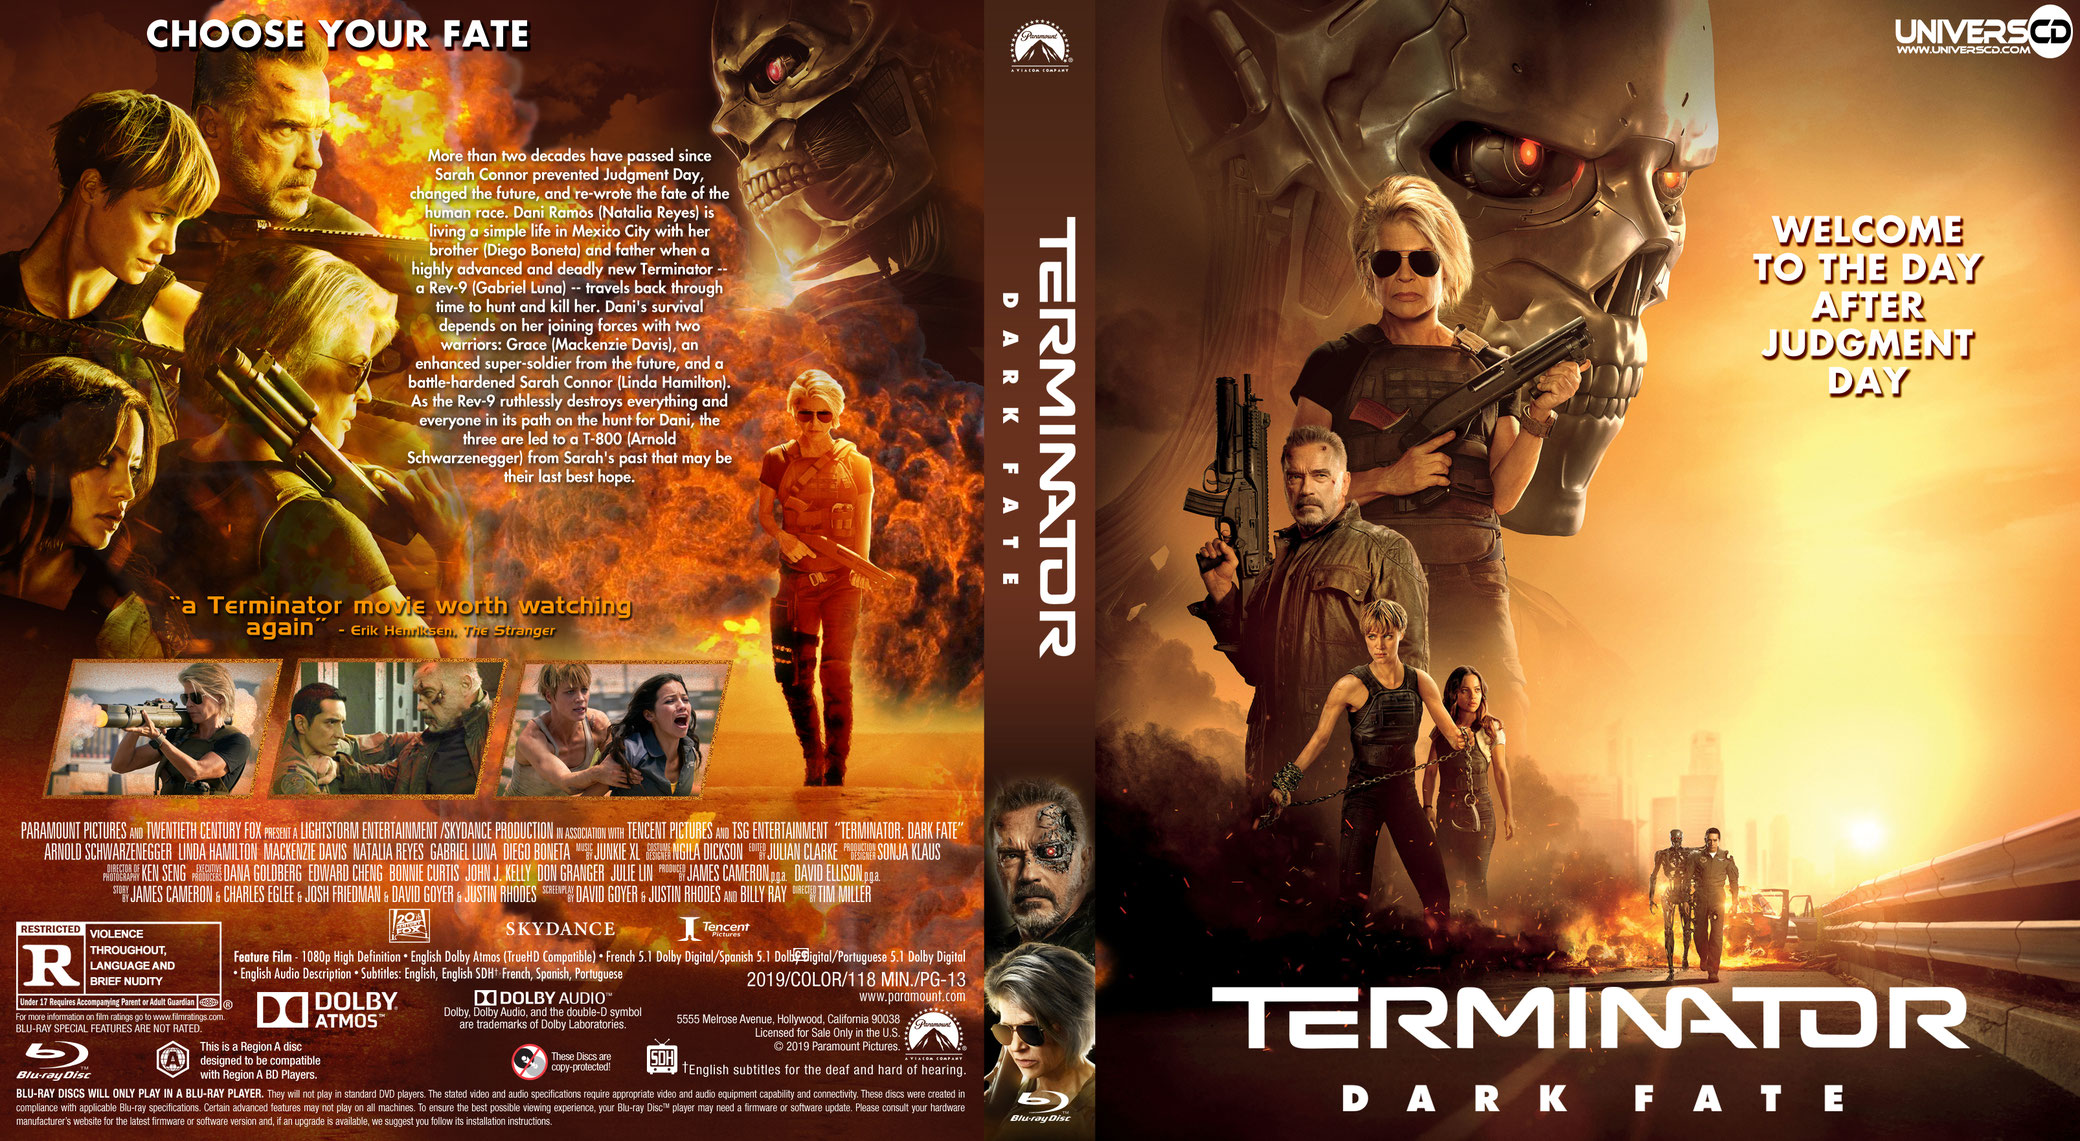 Terminator dark fate defiance интеграторы. Терминатор темные судьбы Blu ray обложка. Терминатор темные судьбы 2019 обложка. Terminator: Dark Fate DVD Cover. Terminator: Dark Fate - Defiance.